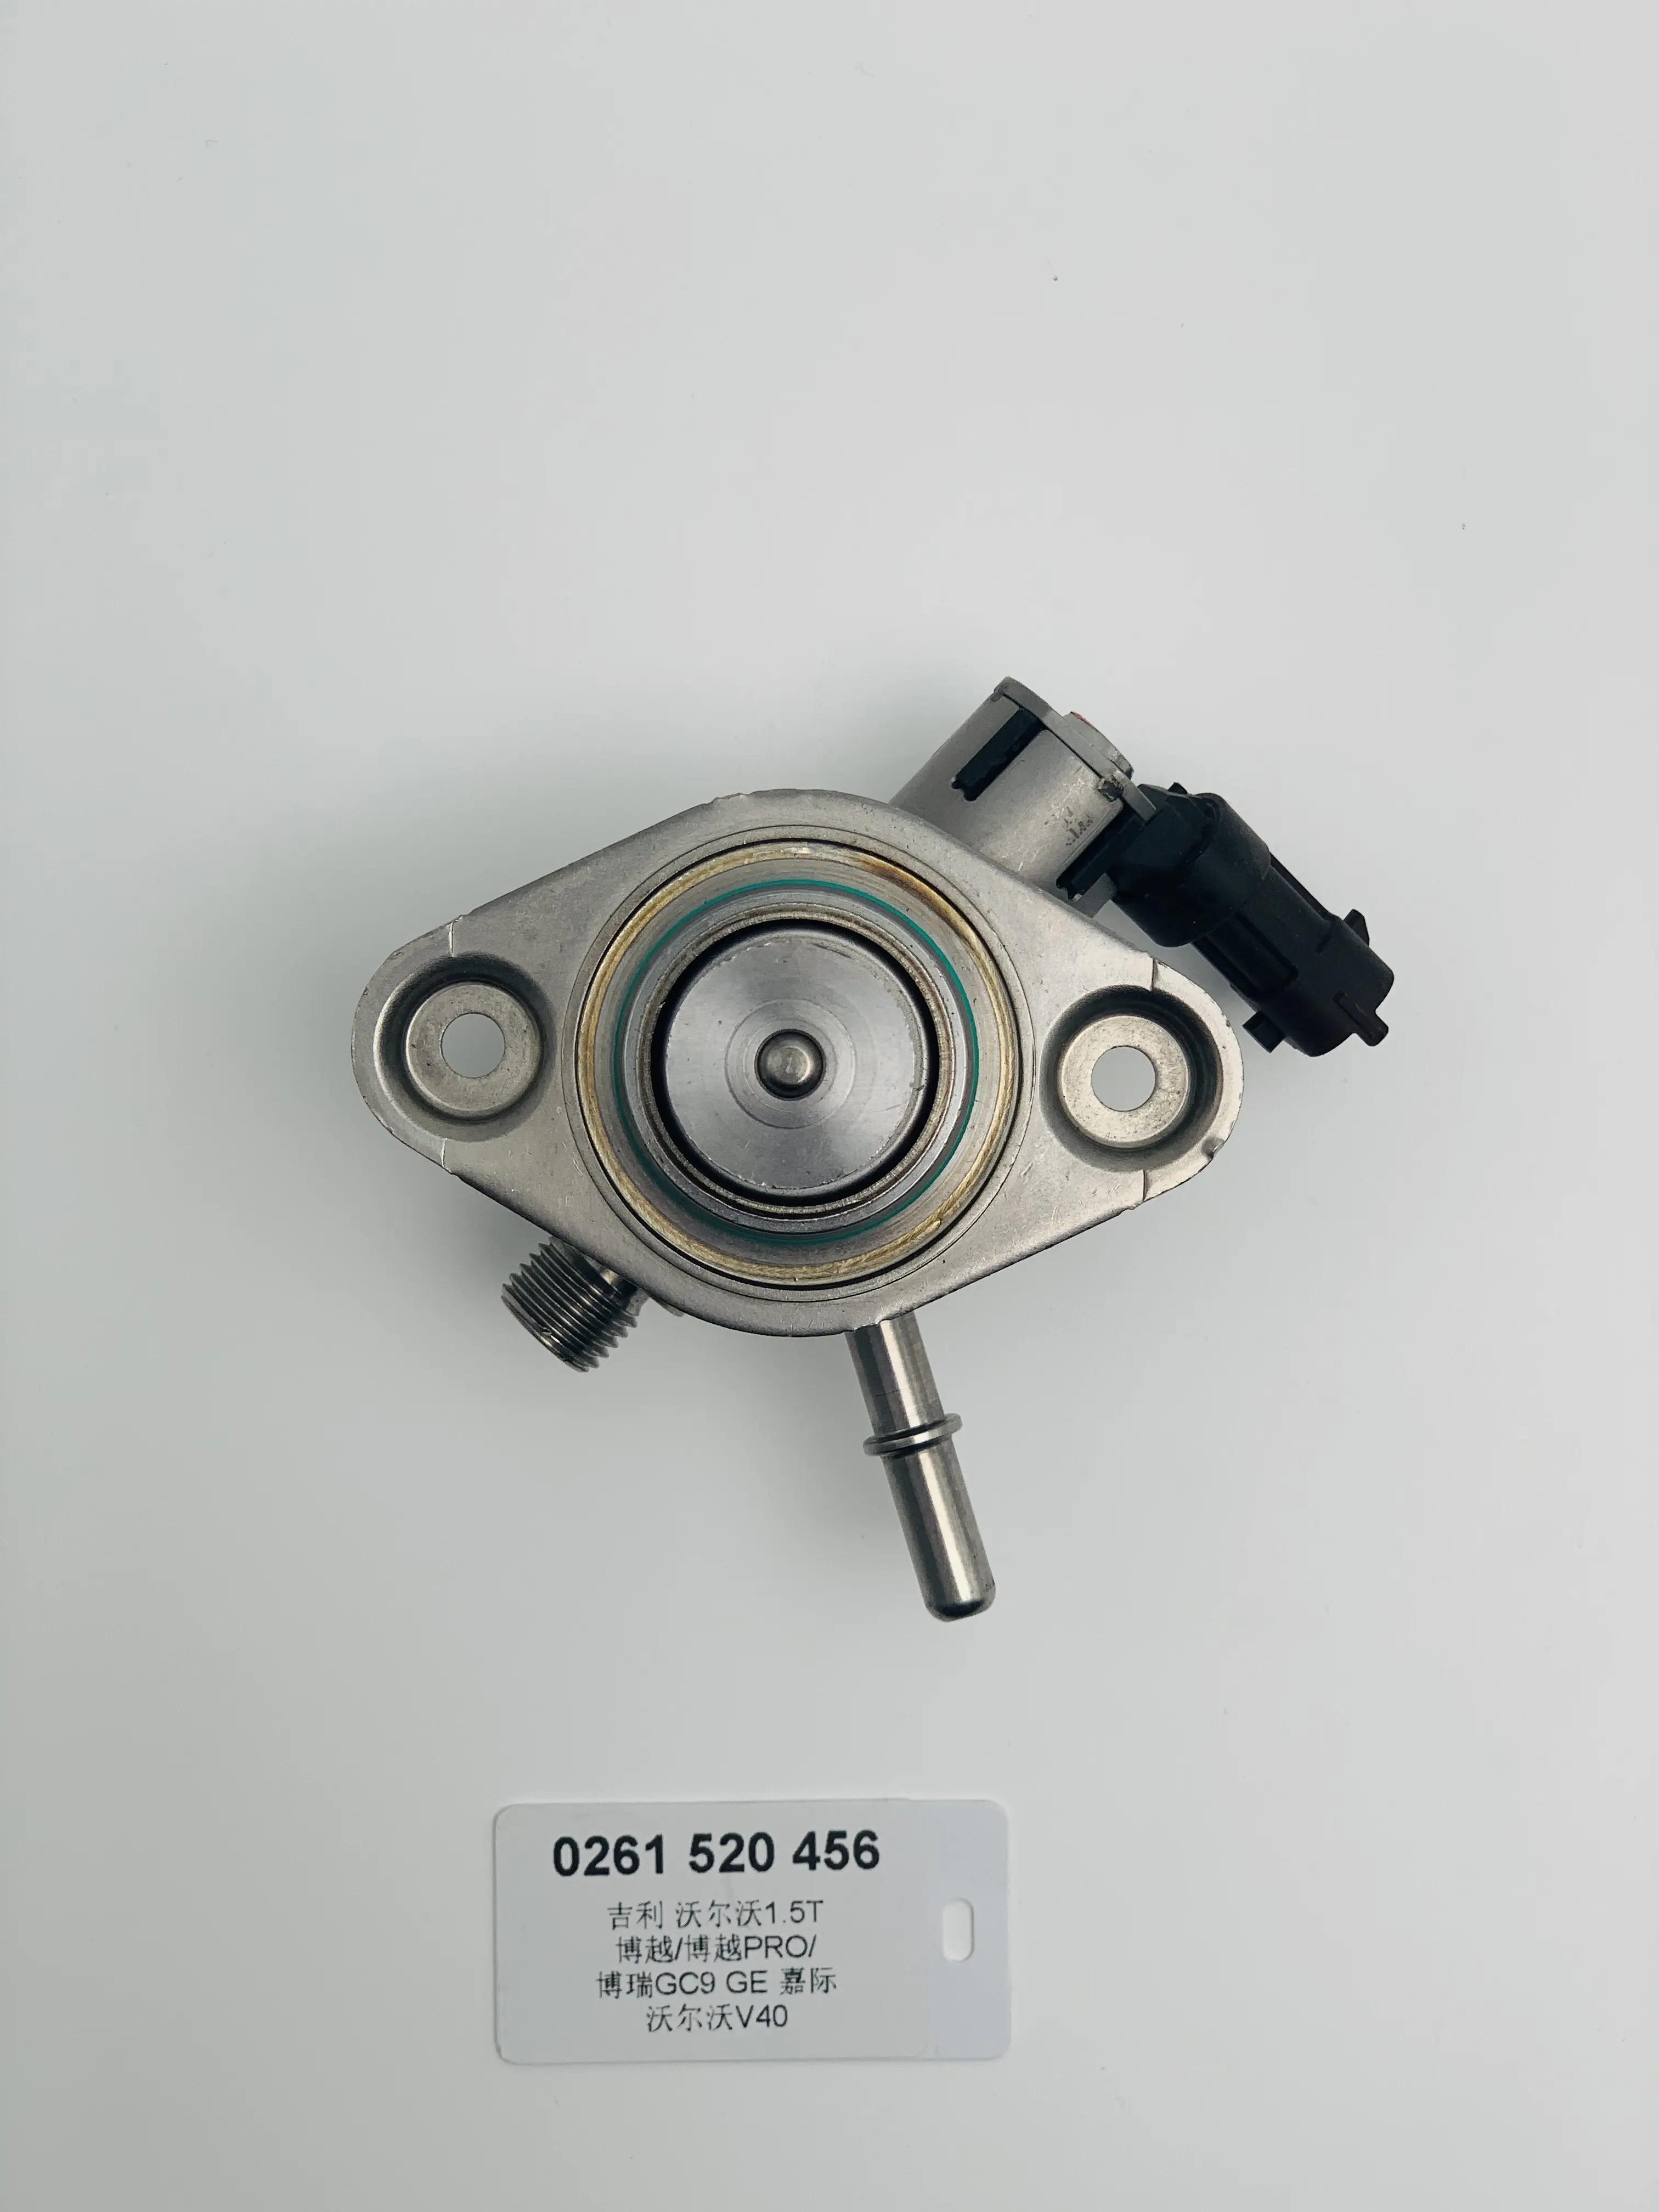 0261520456 Pompa ad alta pressione per Geely Boyue Boyue pro Borui gc9 GE Jiaji Volvo v40 1.5T